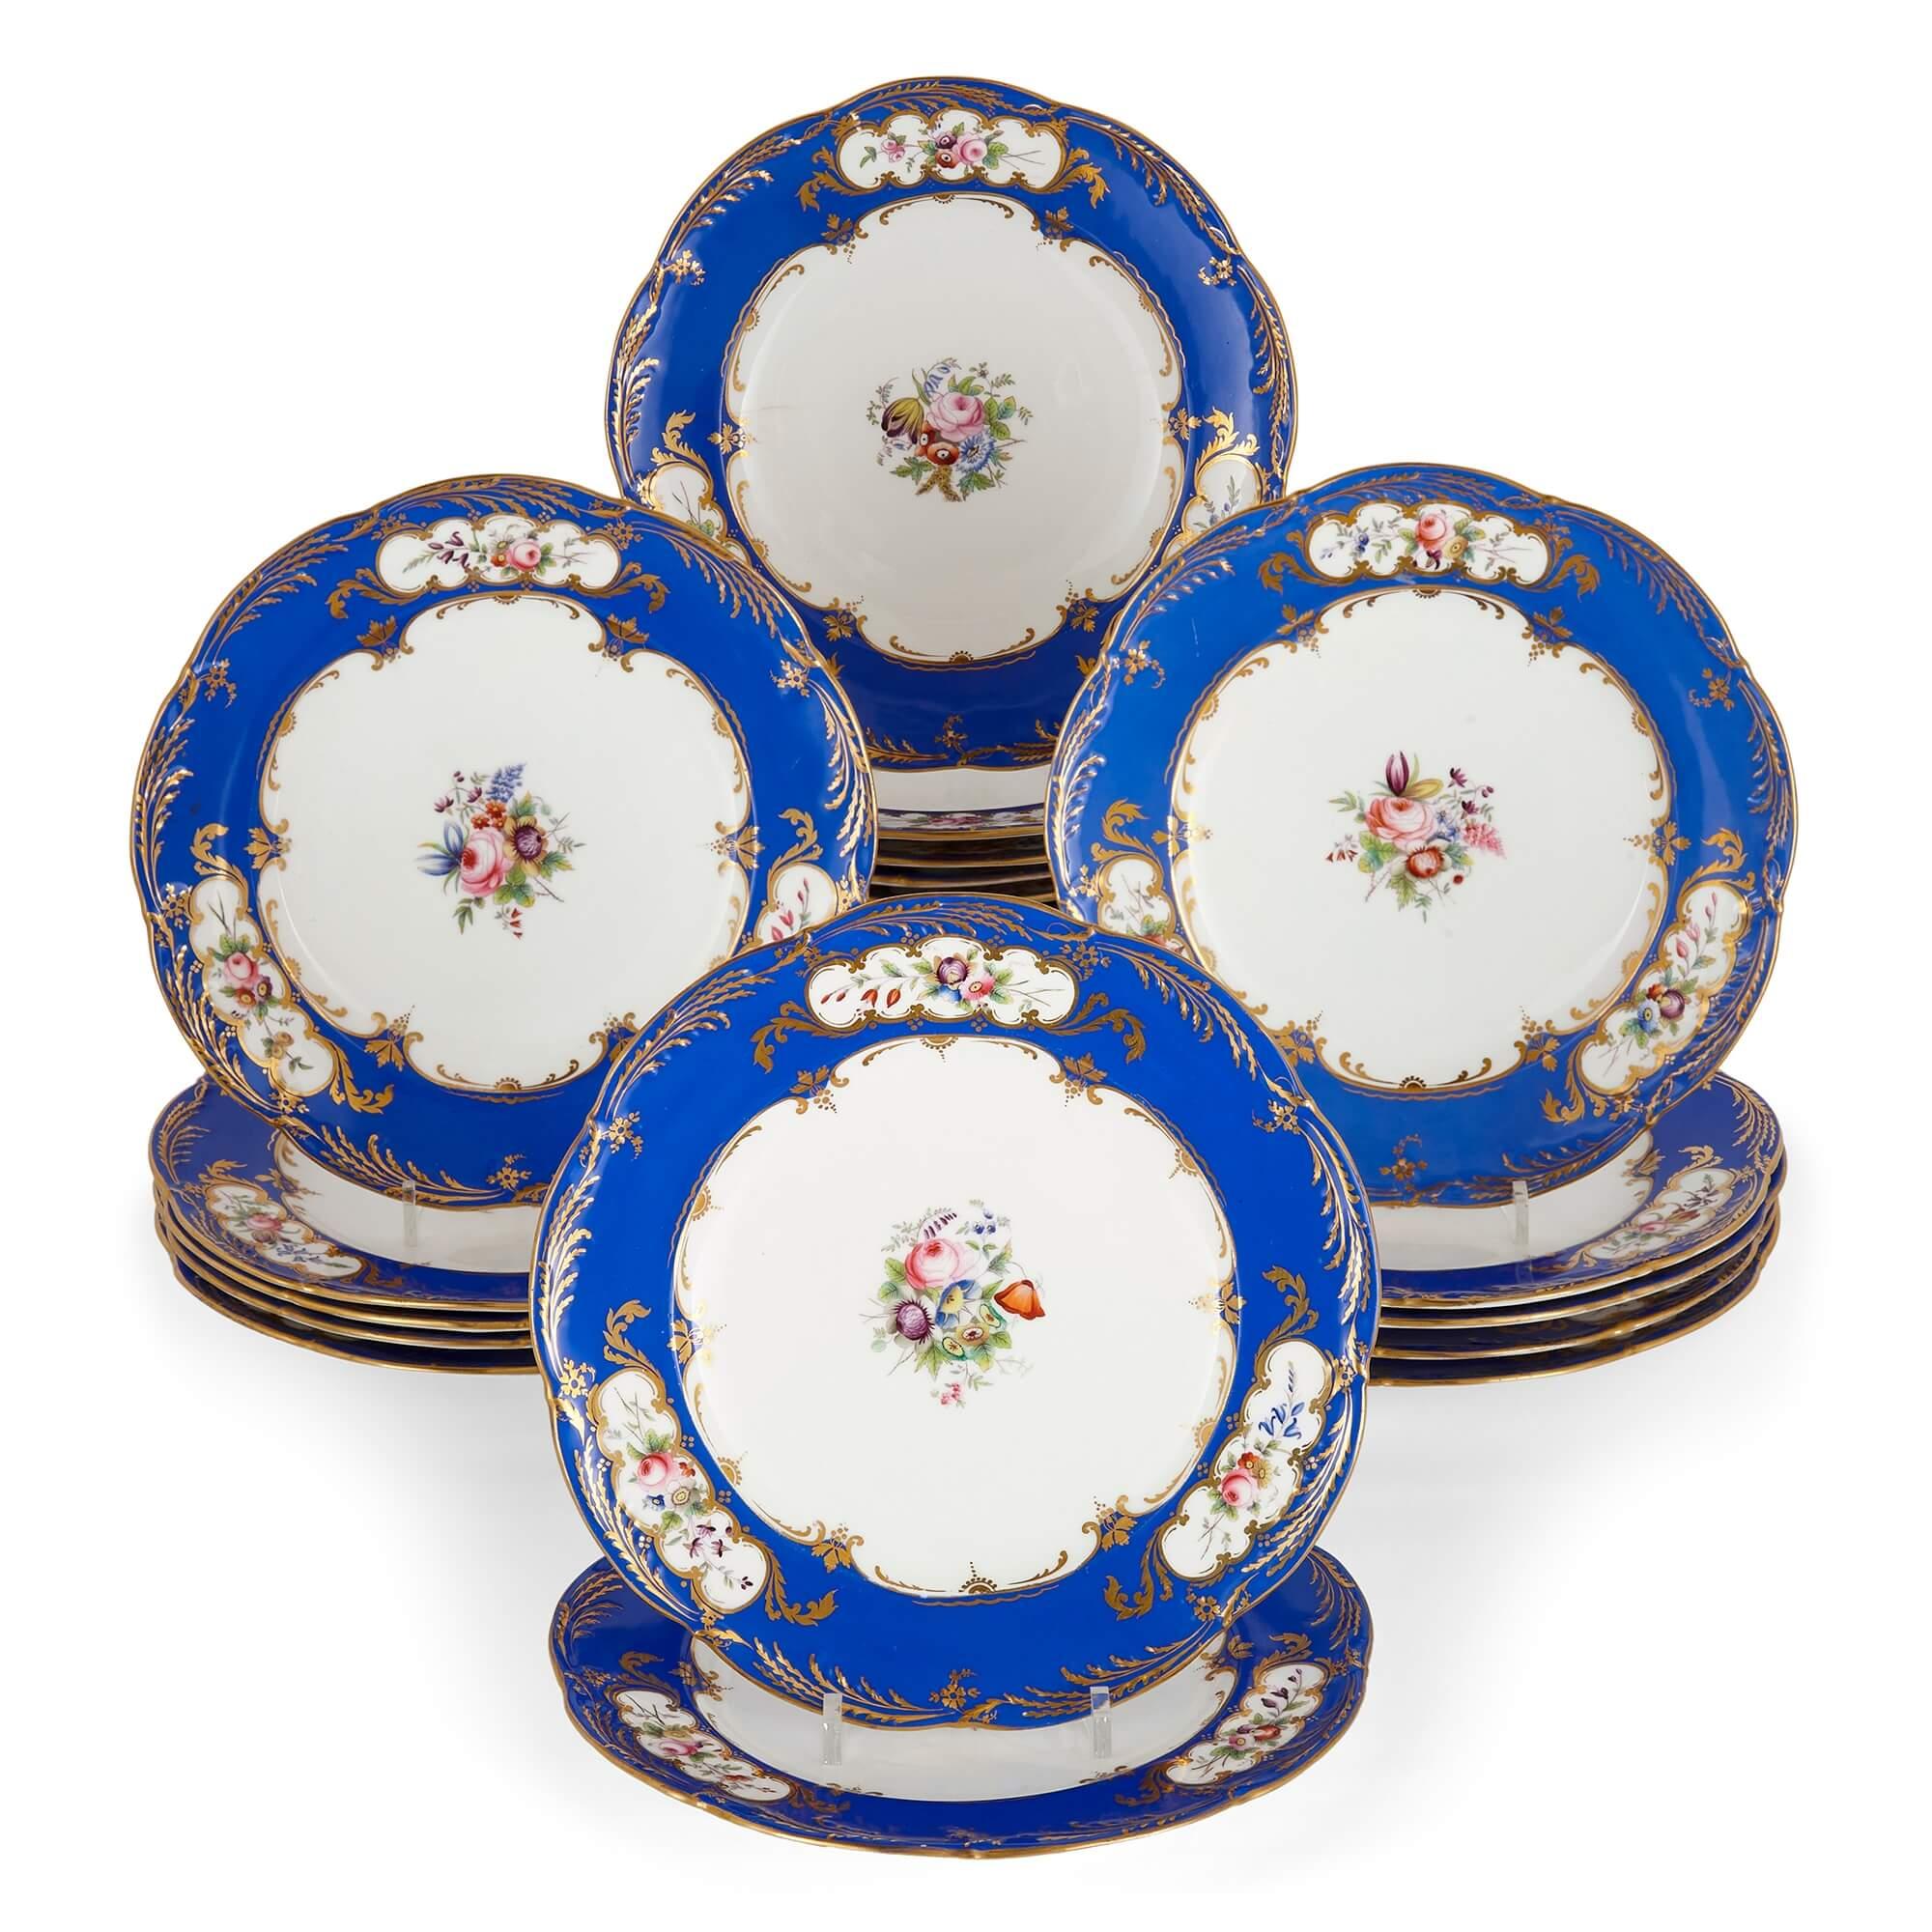 Ensemble de vingt-quatre assiettes à dîner en porcelaine bleu et blanc à motifs floraux
Continental, 19ème siècle
Hauteur 2.5cm, diamètre 23.5cm

Ces assiettes à dîner en porcelaine bleue et blanche constituent un excellent ensemble, parfait pour